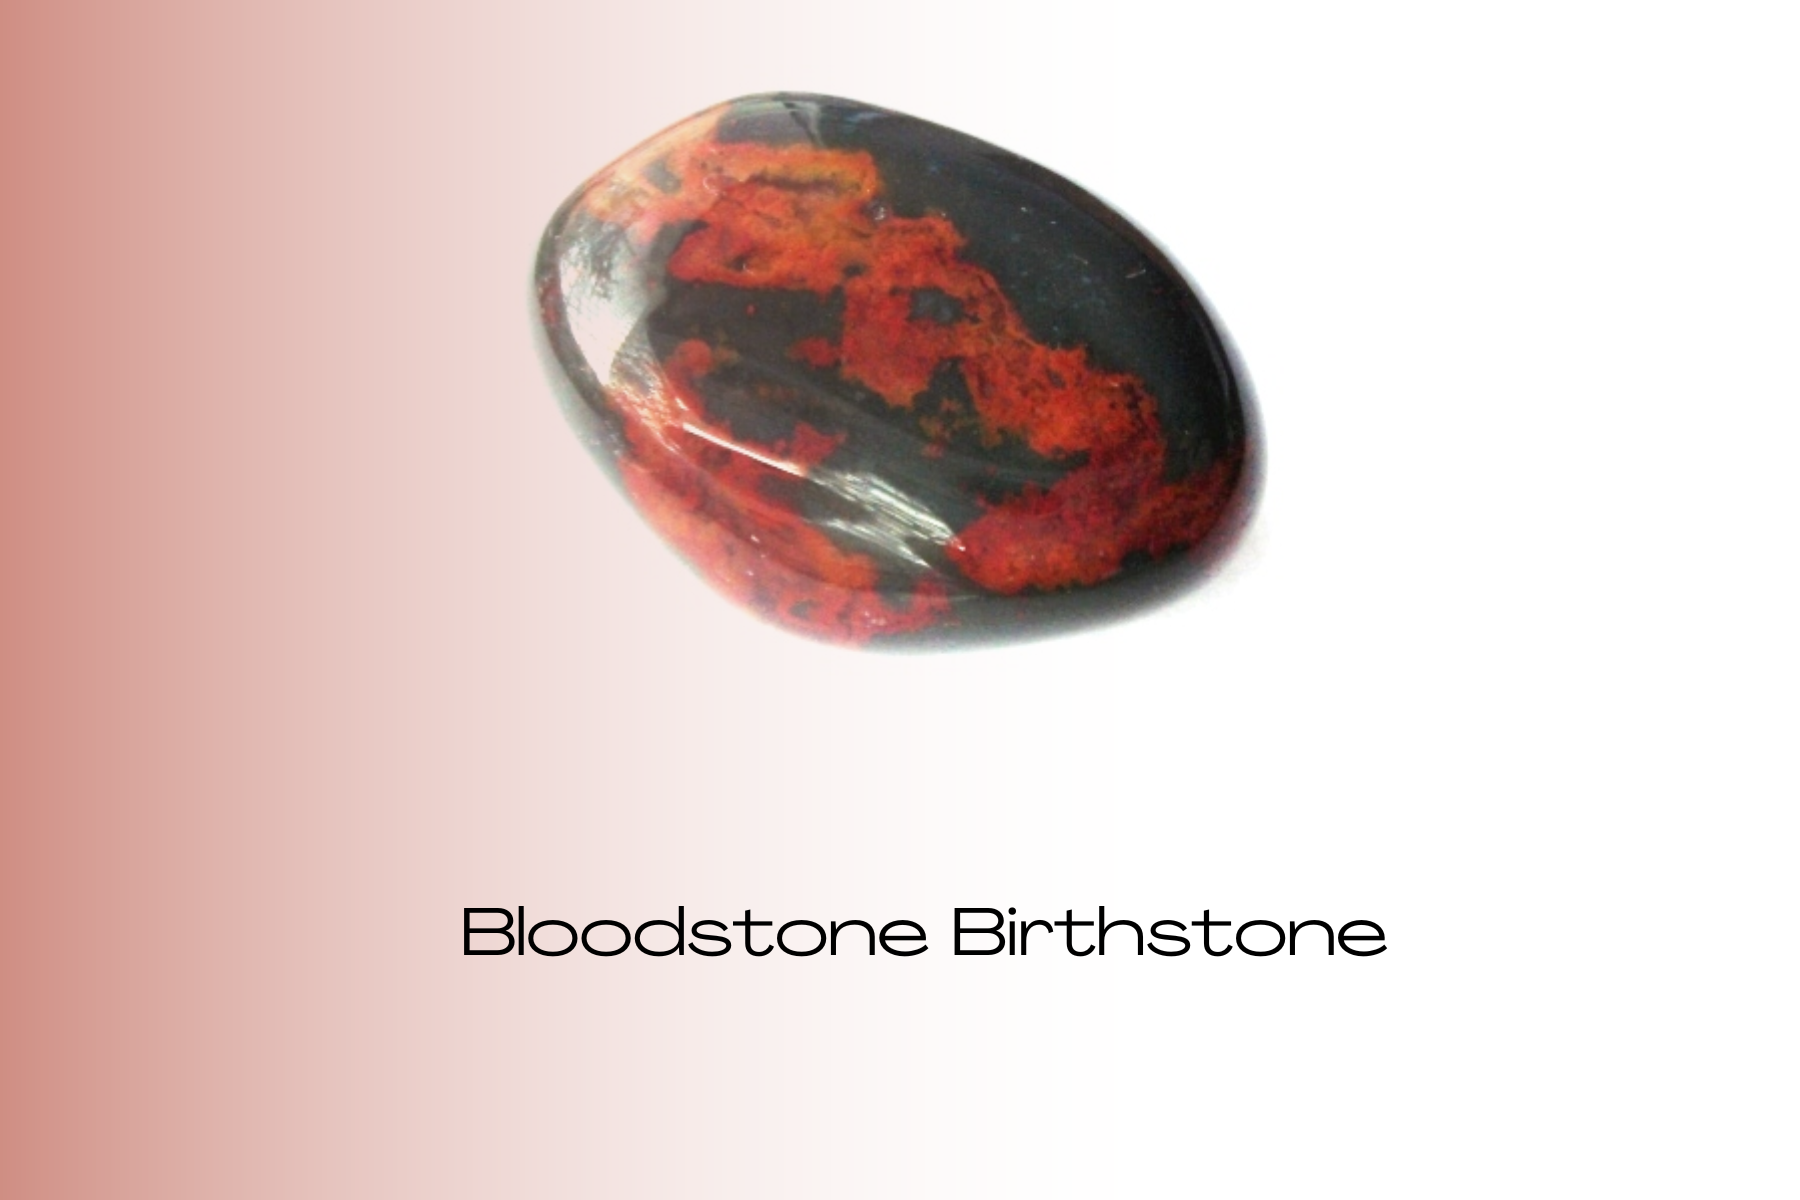 Soft rock-formed red-black bloodstone